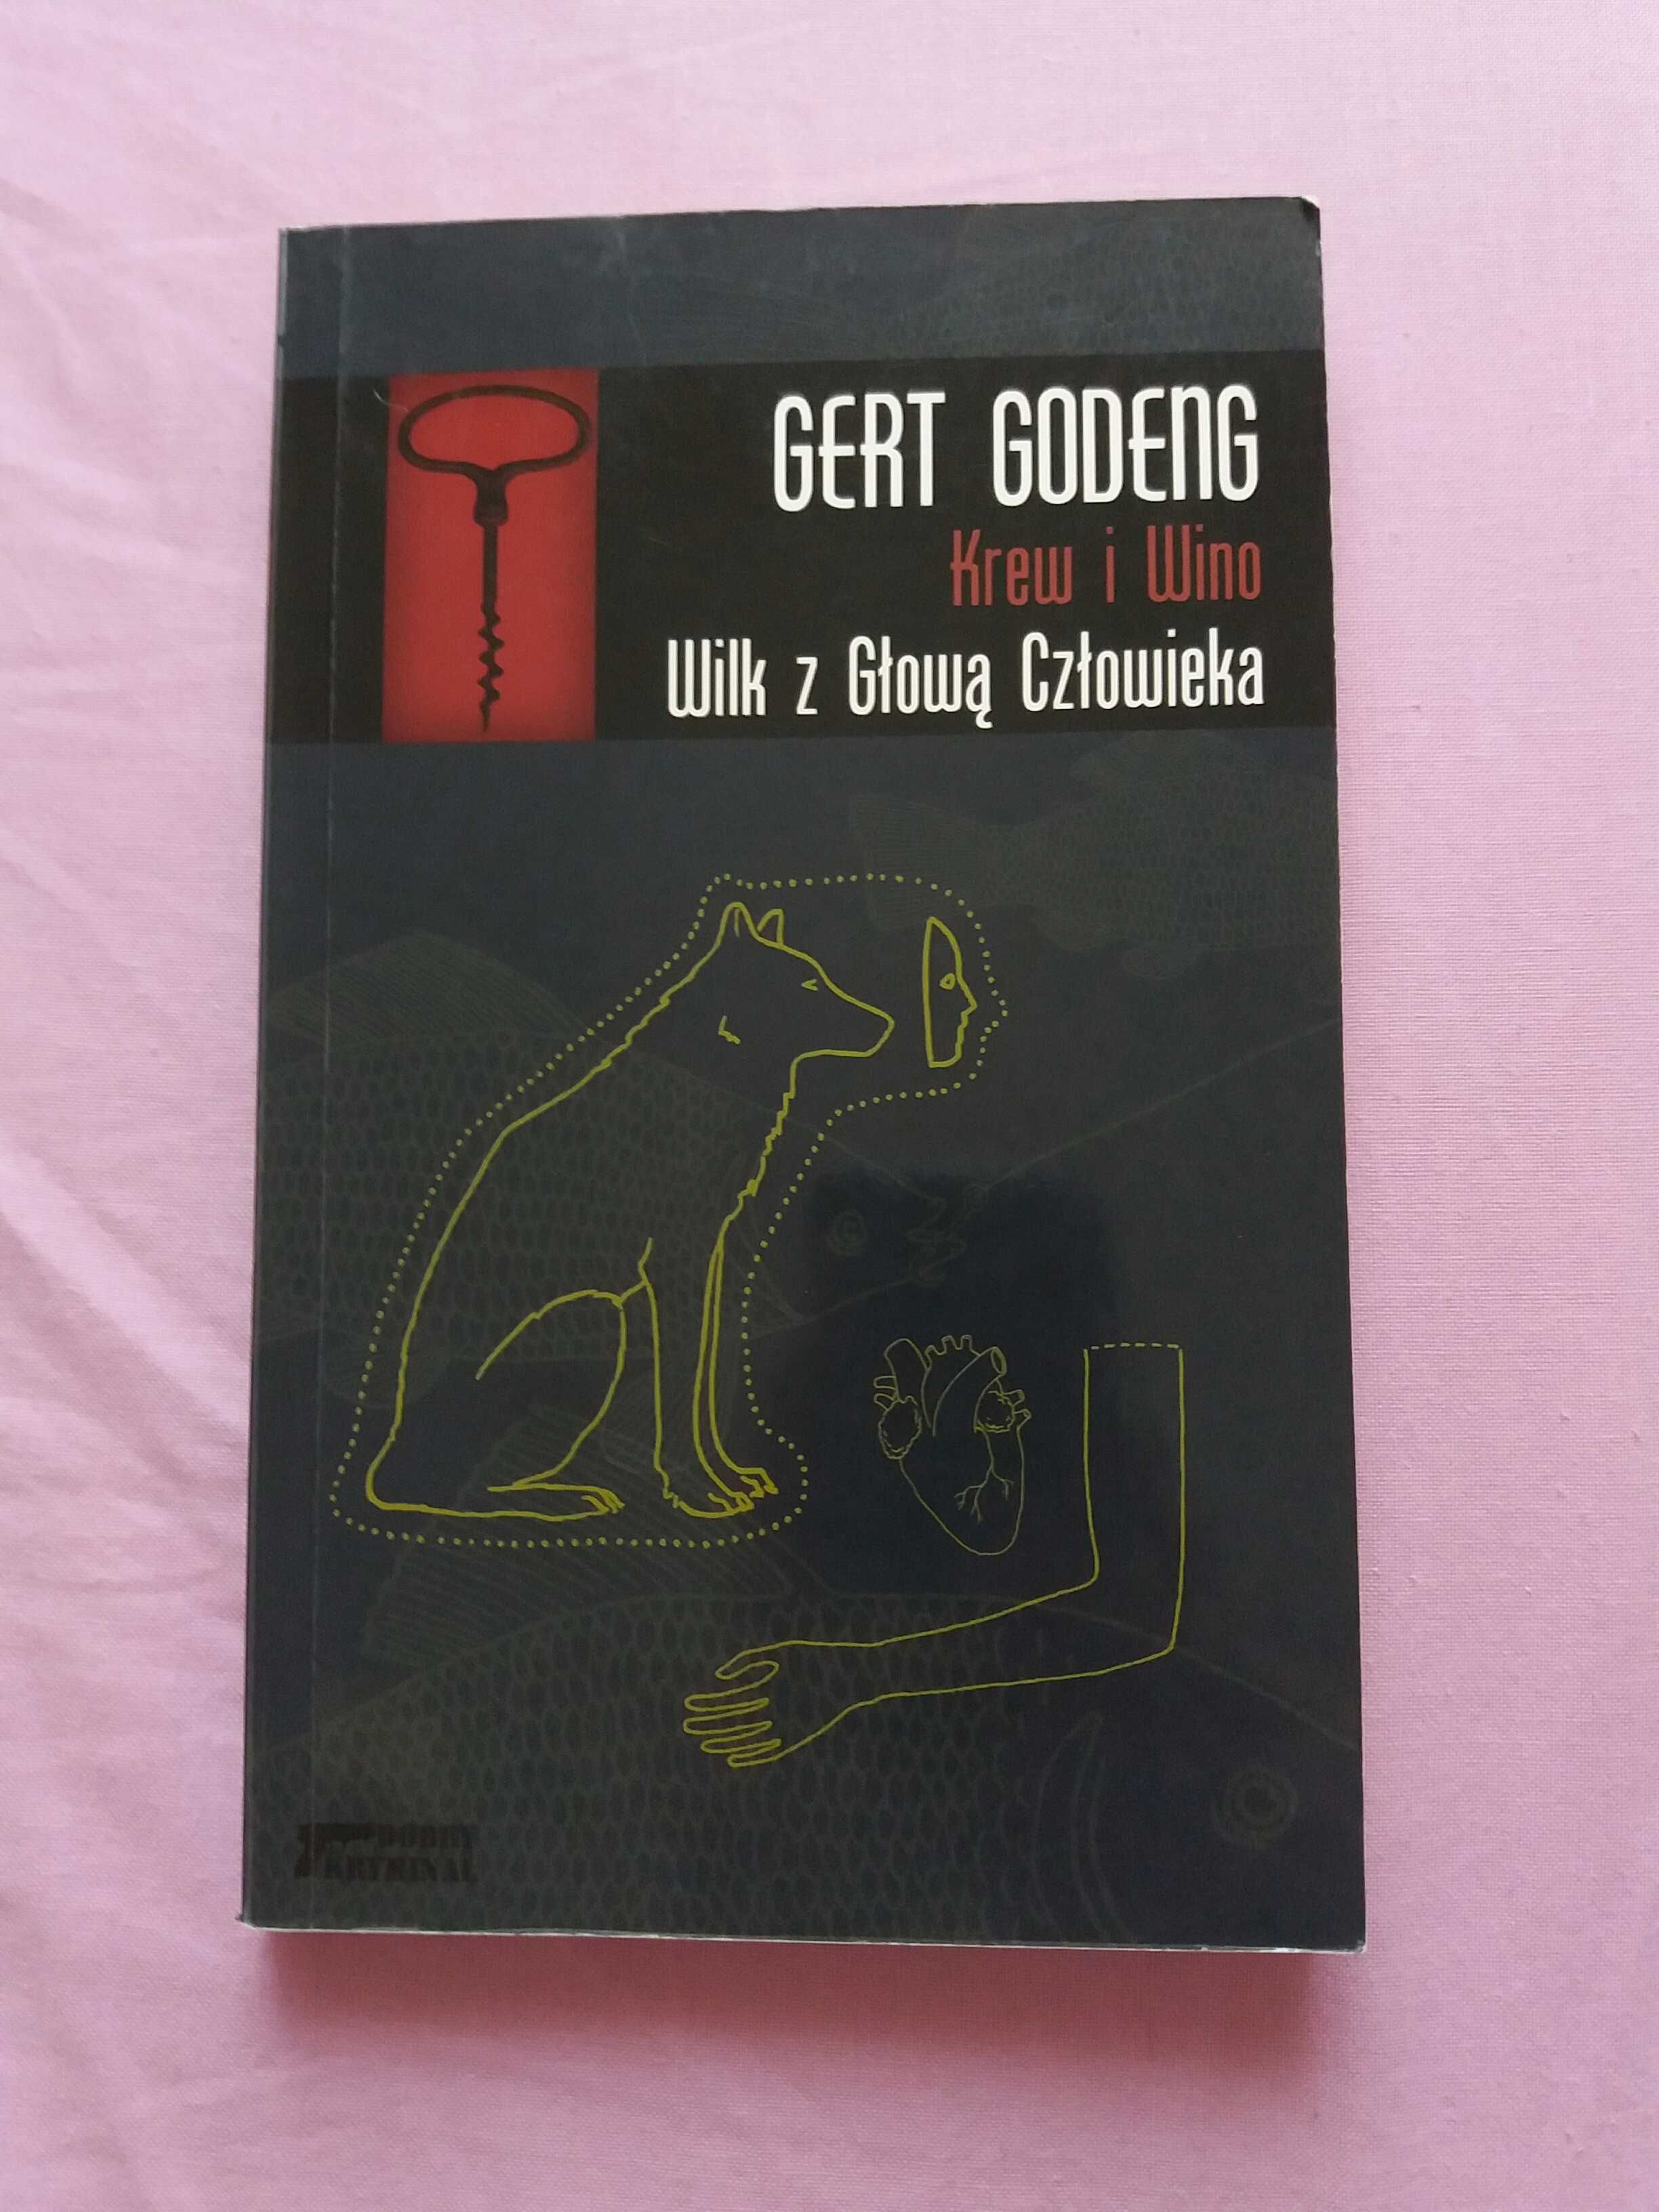 Wilk z Głową Człowieka Gert Godeng kryminał seria Krew i Wino bdb